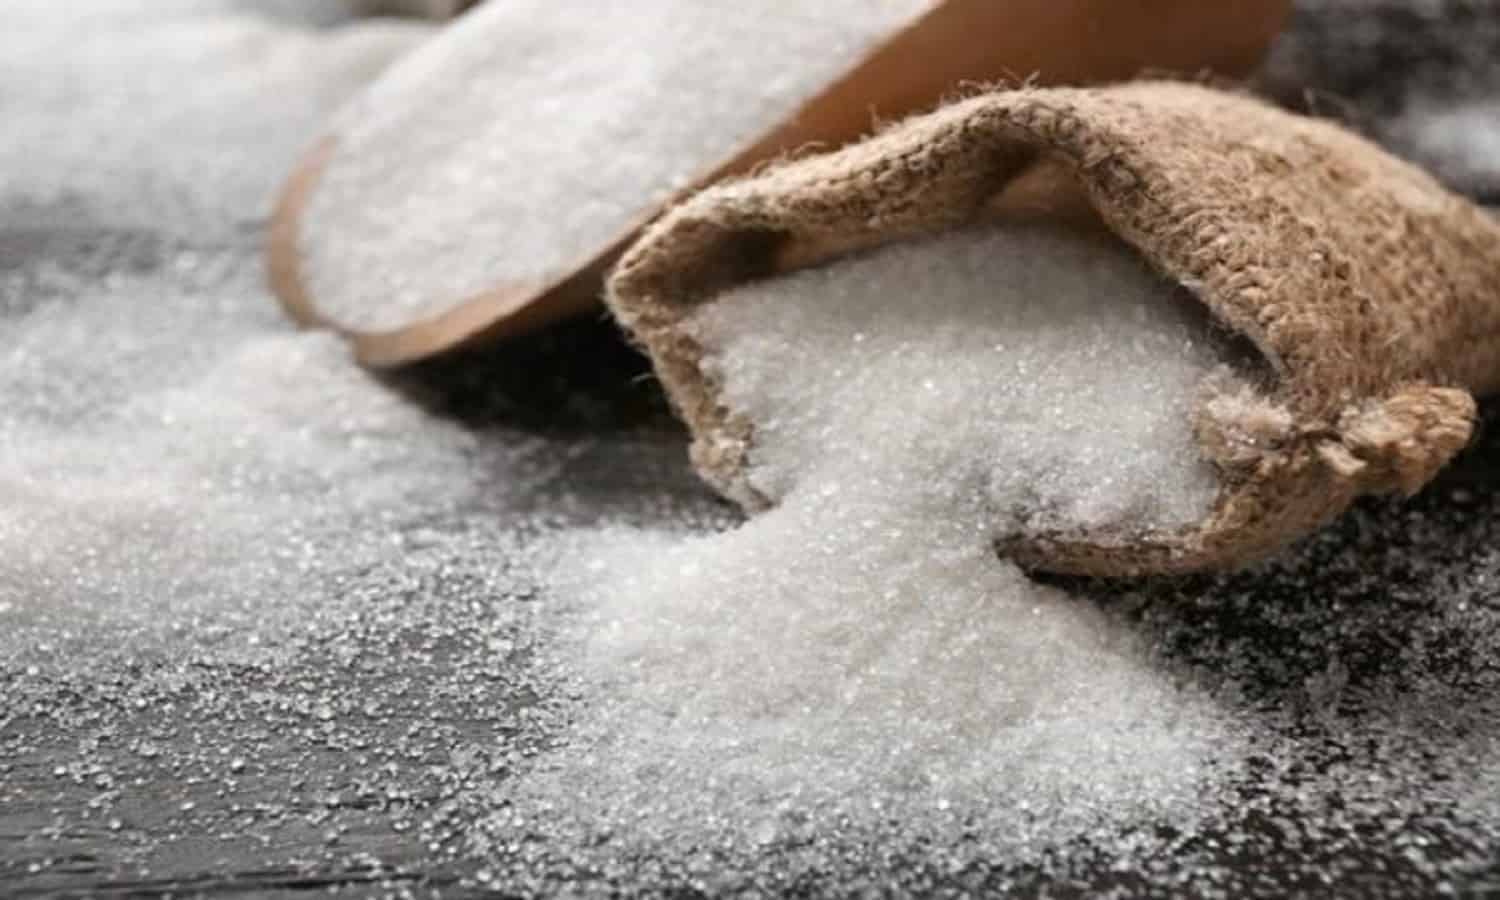 شركات السكر تحدد سعر البيع للقطاع الصناعي عند 35 ألف جنيه للطن